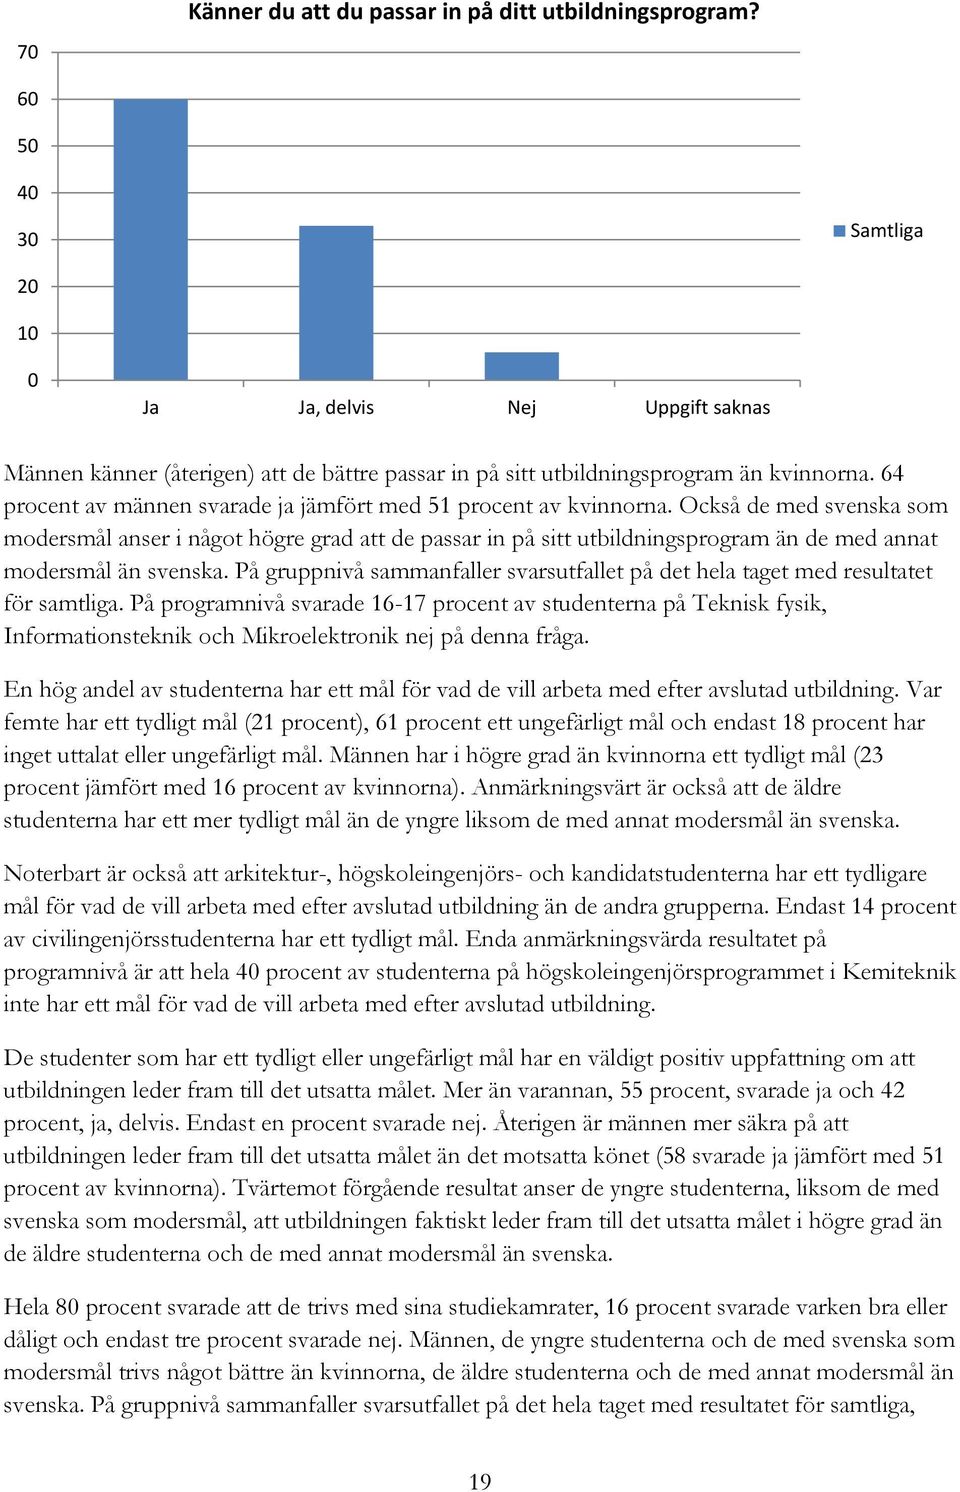 Också de med svenska som modersmål anser i något högre grad att de passar in på sitt utbildningsprogram än de med annat modersmål än svenska.